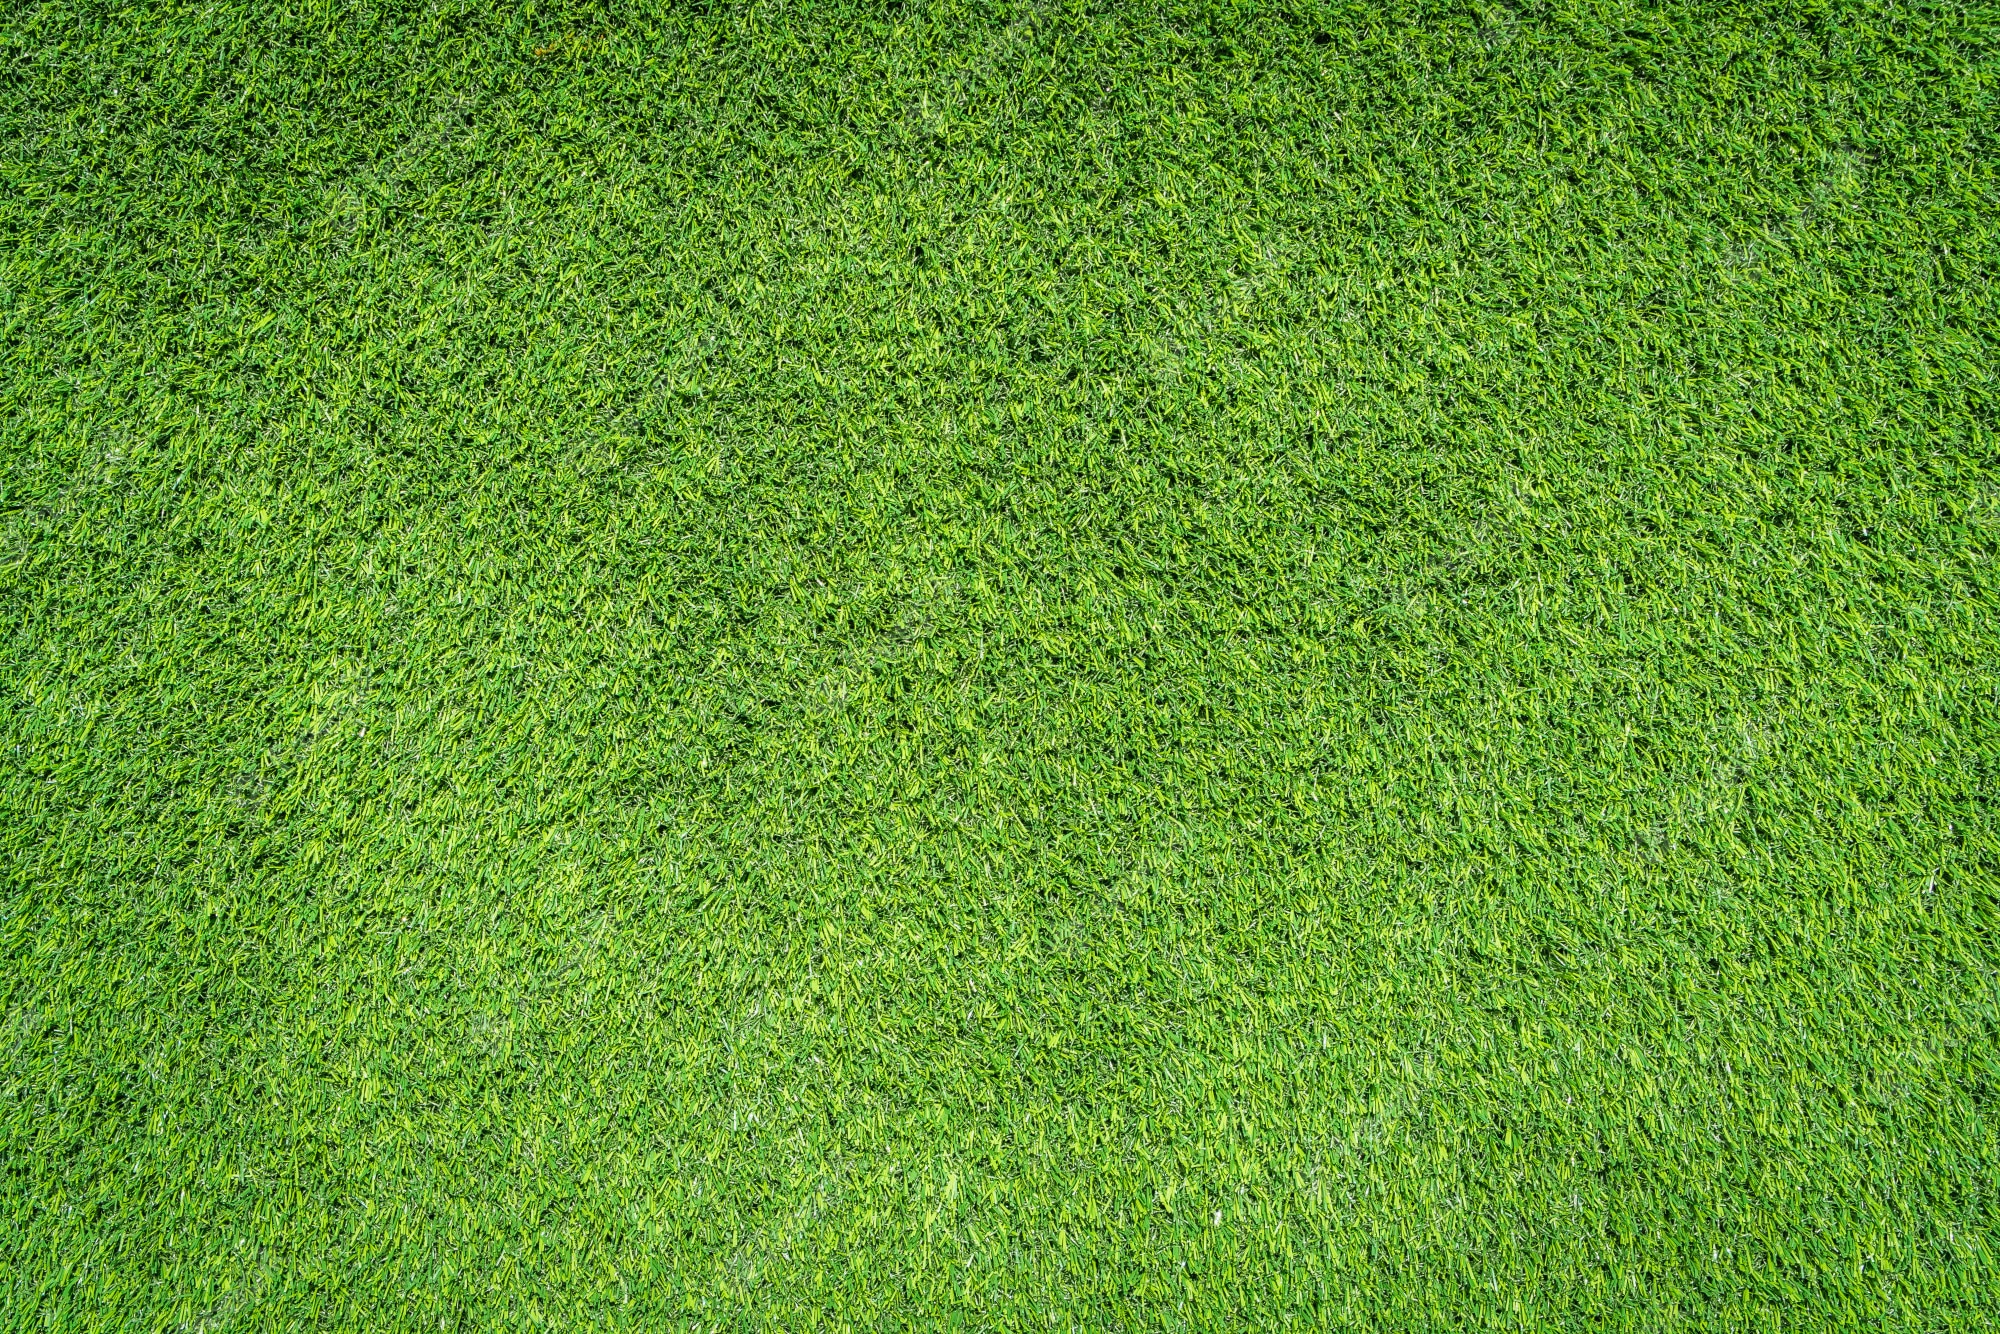 Grass Texture Image